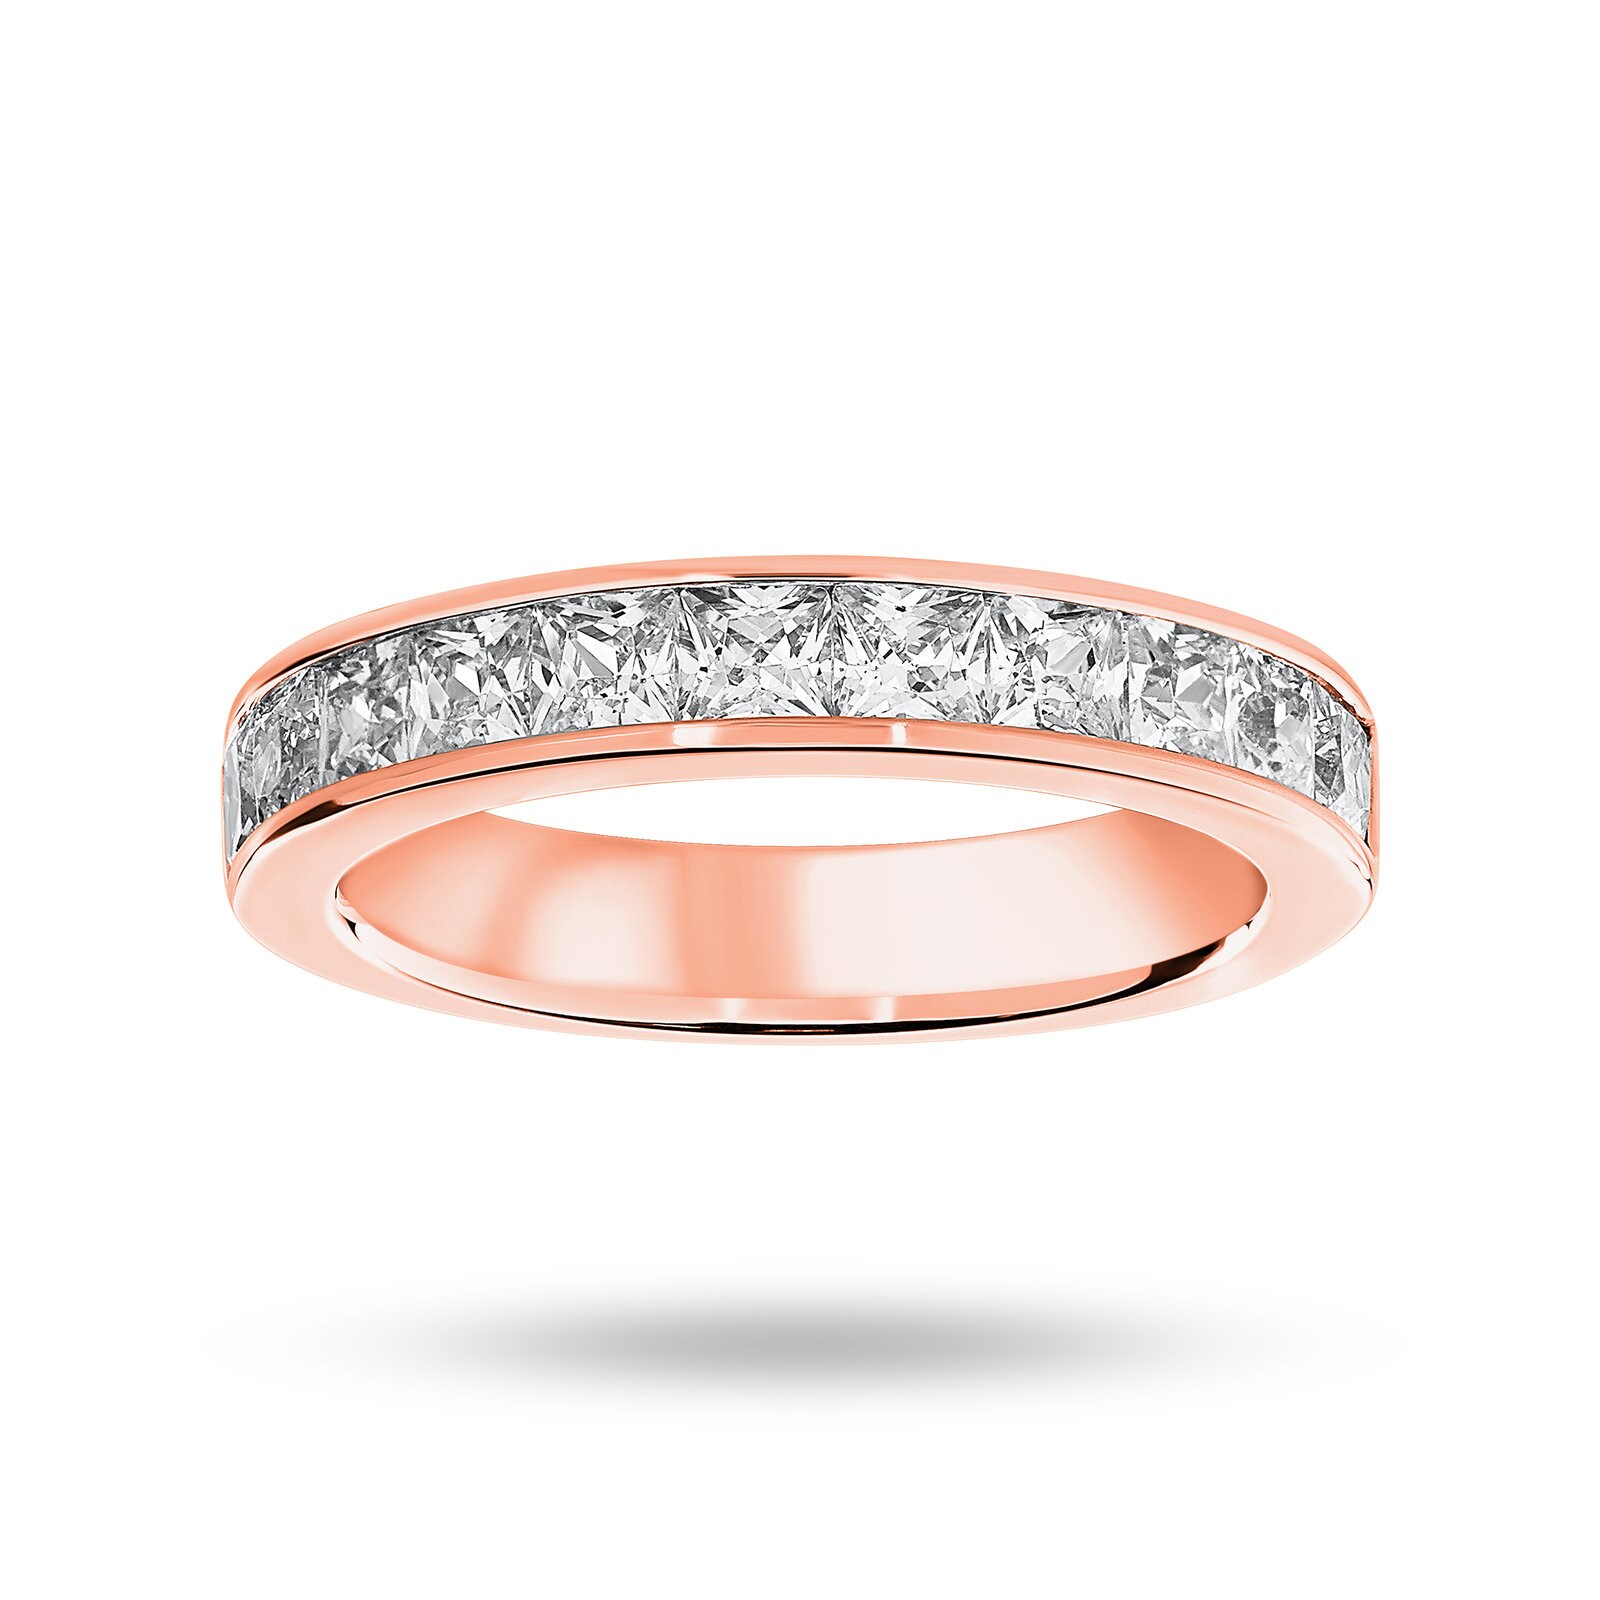 18 Carat Rose Gold 1.50 Carat Princess Cut Half Eternity Ring - Ring Size K